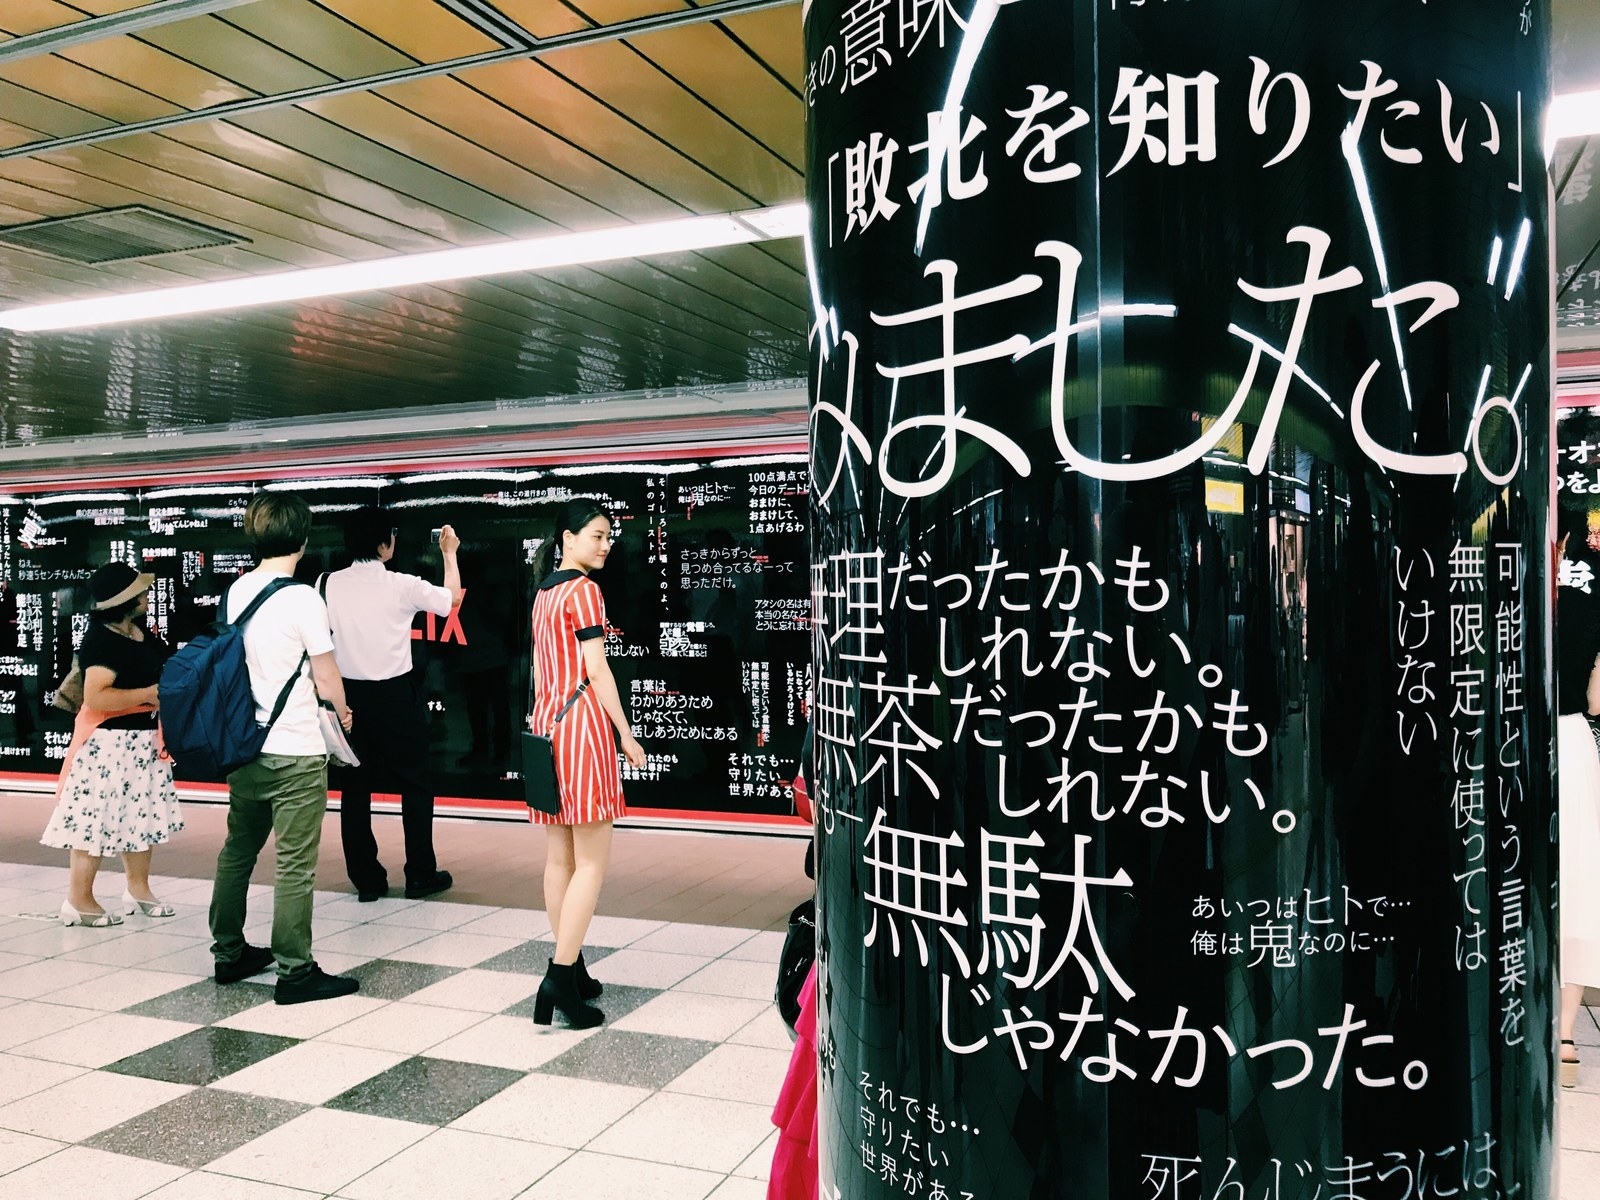 新宿駅がすごいことになっちゃってる 思い出フラッシュバックで発狂しそう